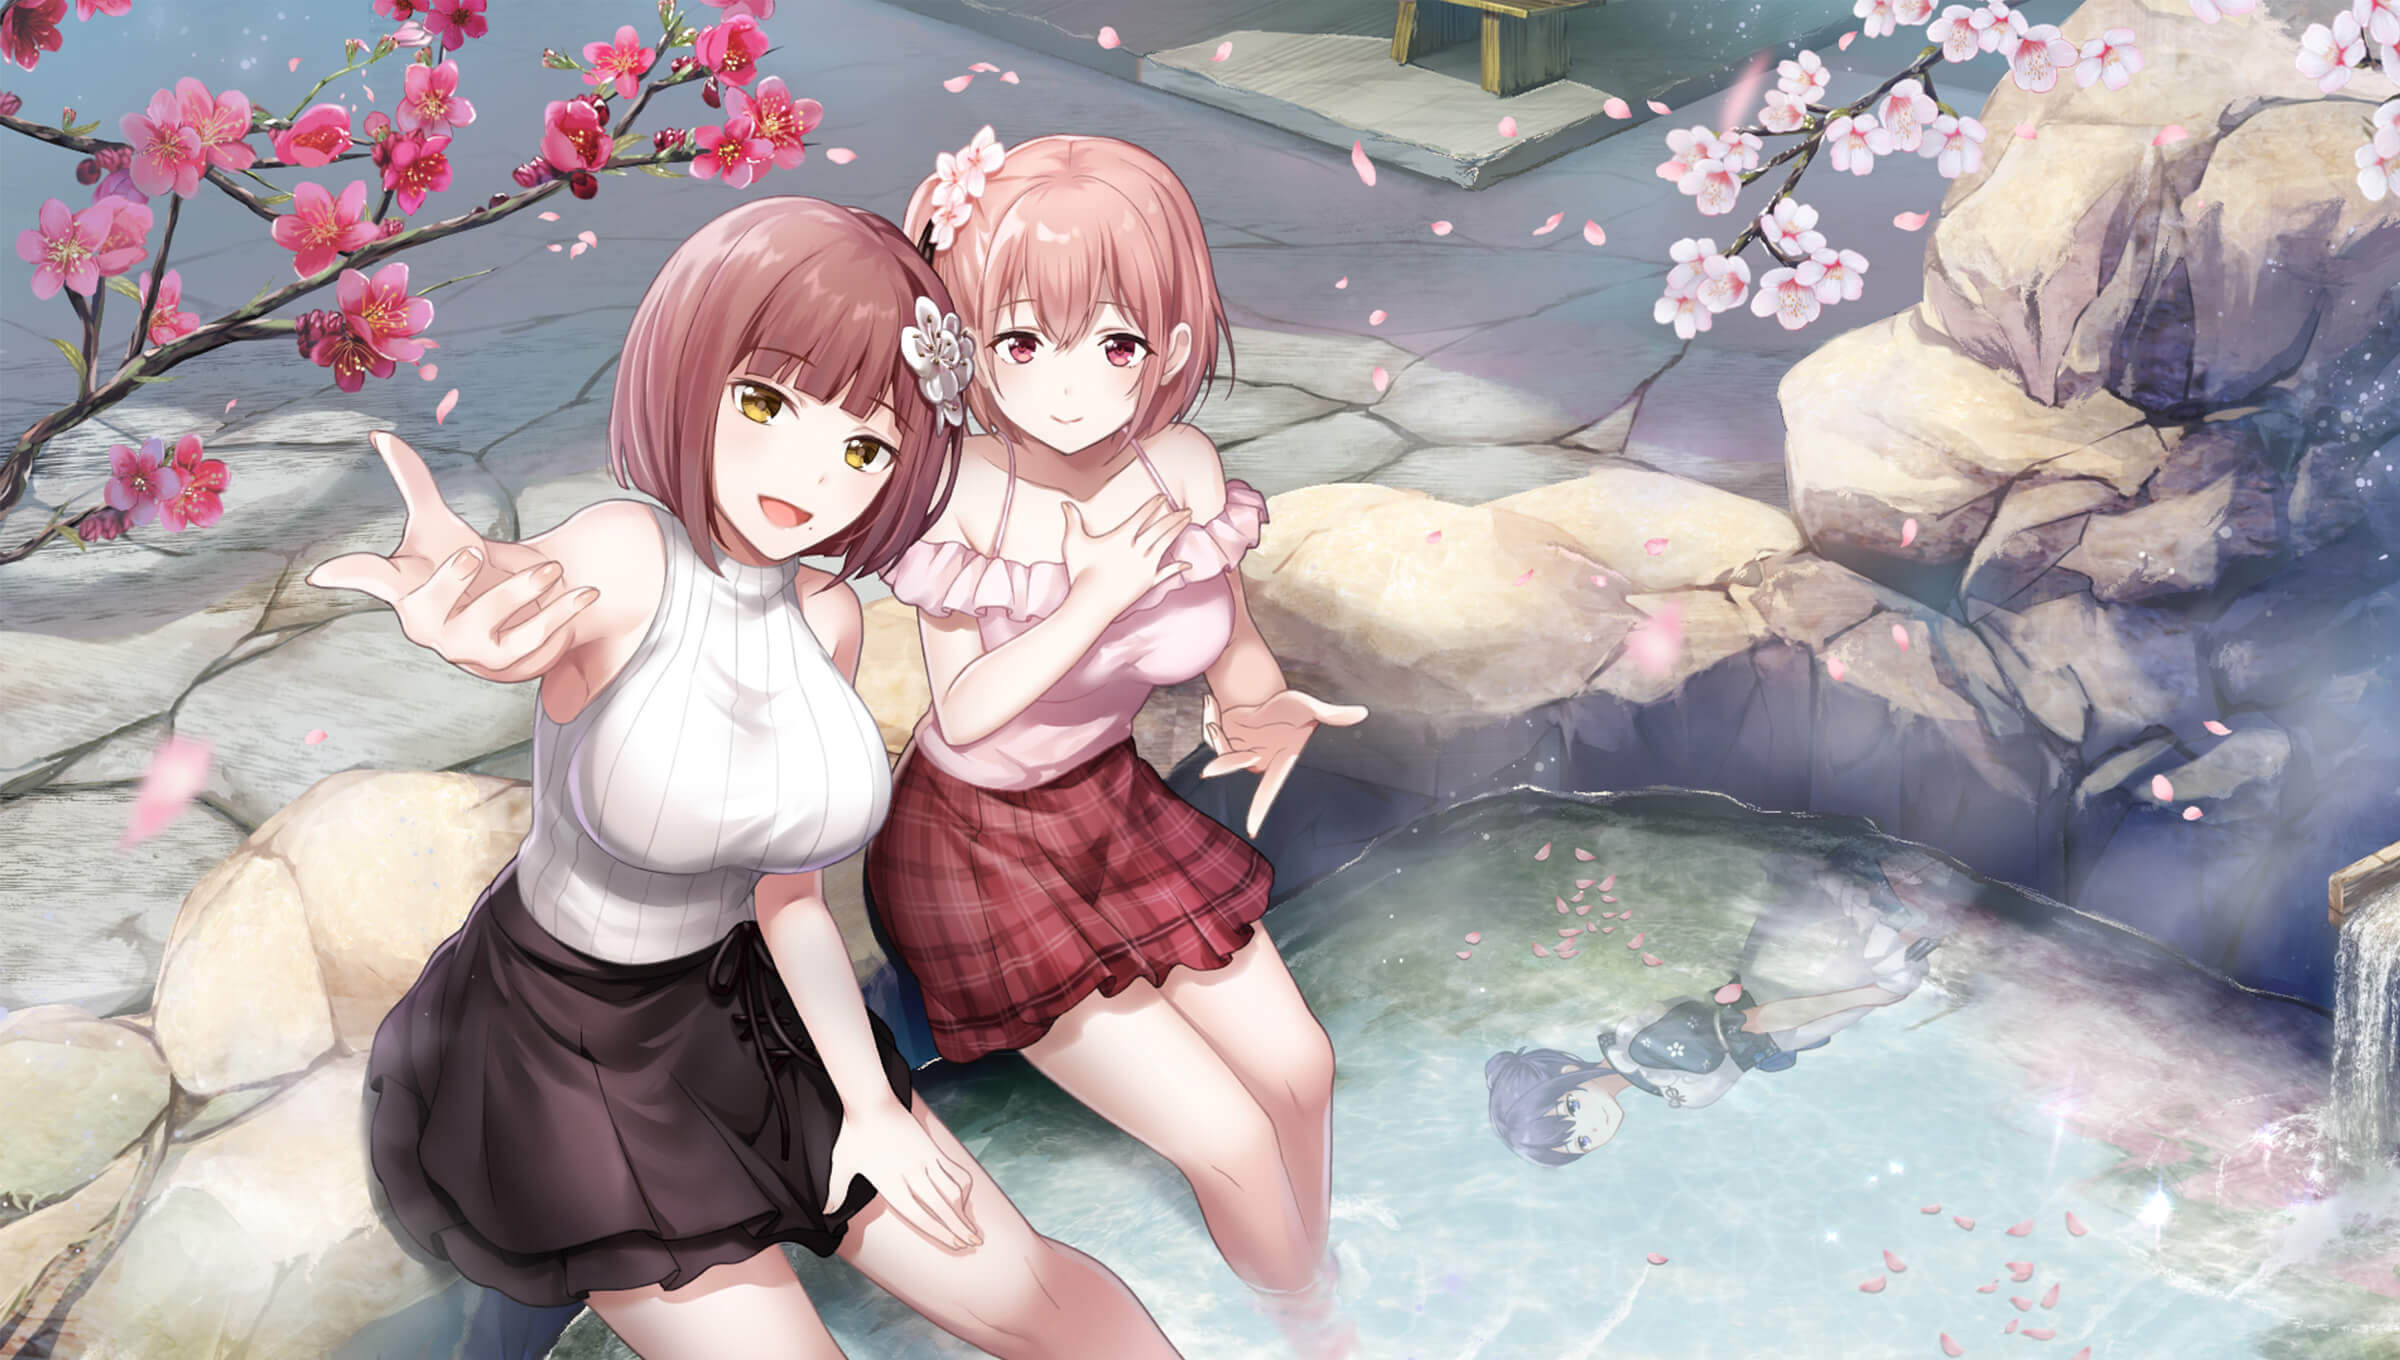 Anime Anime Girls Hot Spring Water Flower In Hair 2400x1360